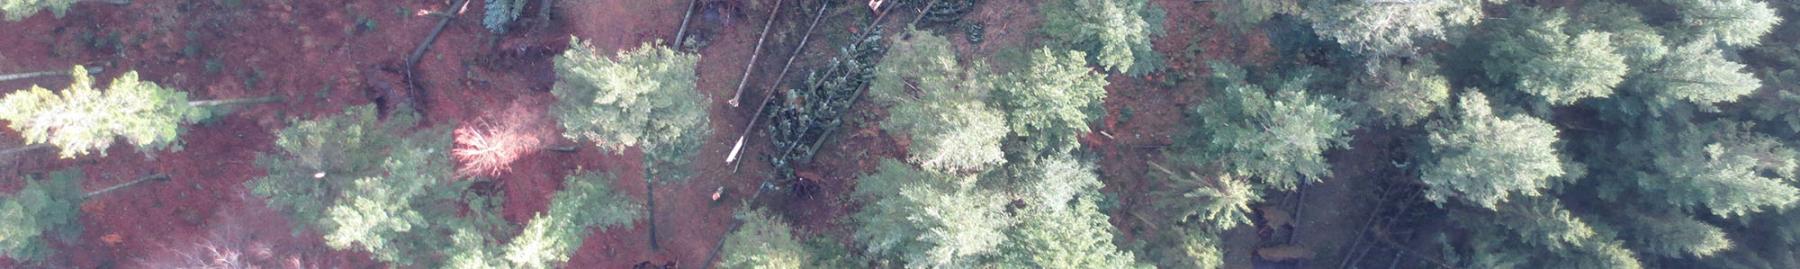 Dronefoto af skov i smal udgave